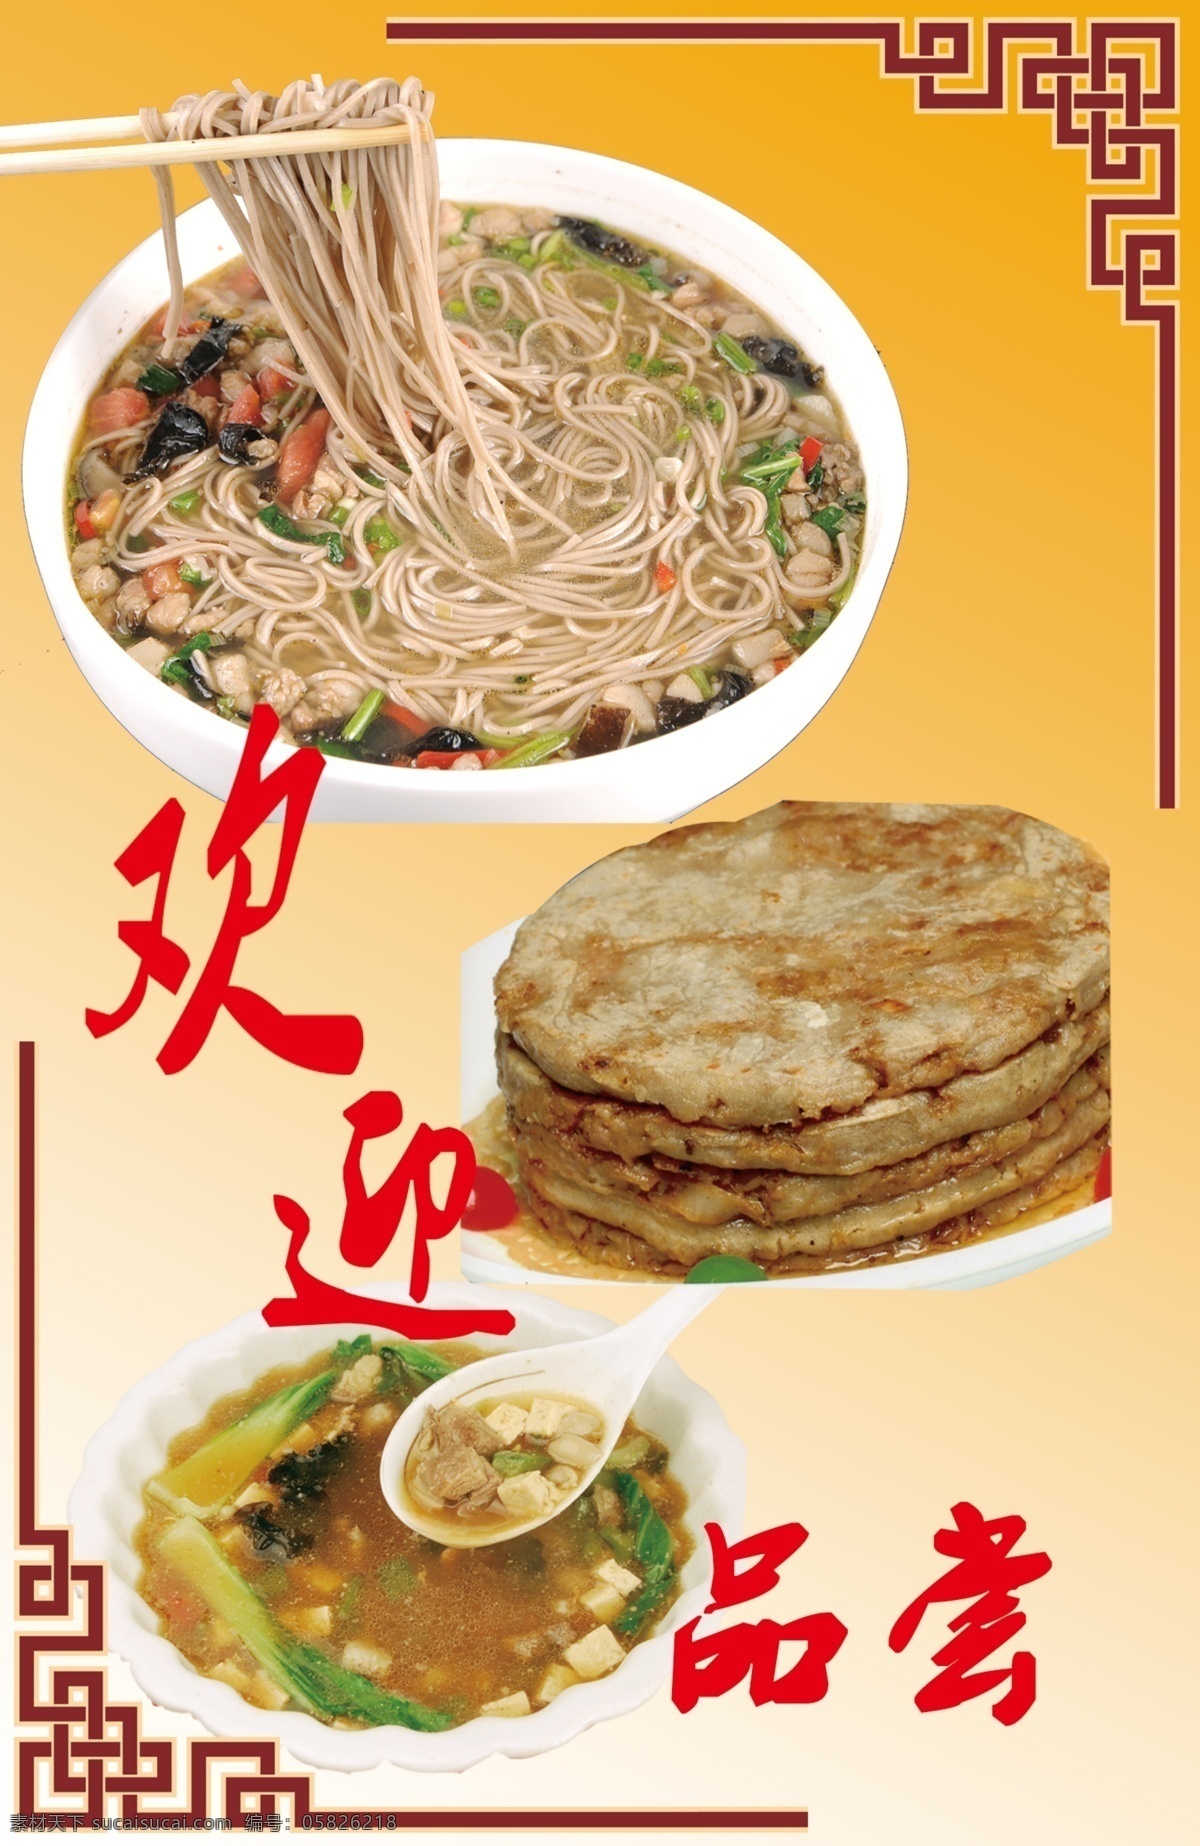 莜面 荞面 陷饼汤 北方特色 传统美食 菜单菜谱 广告设计模板 源文件